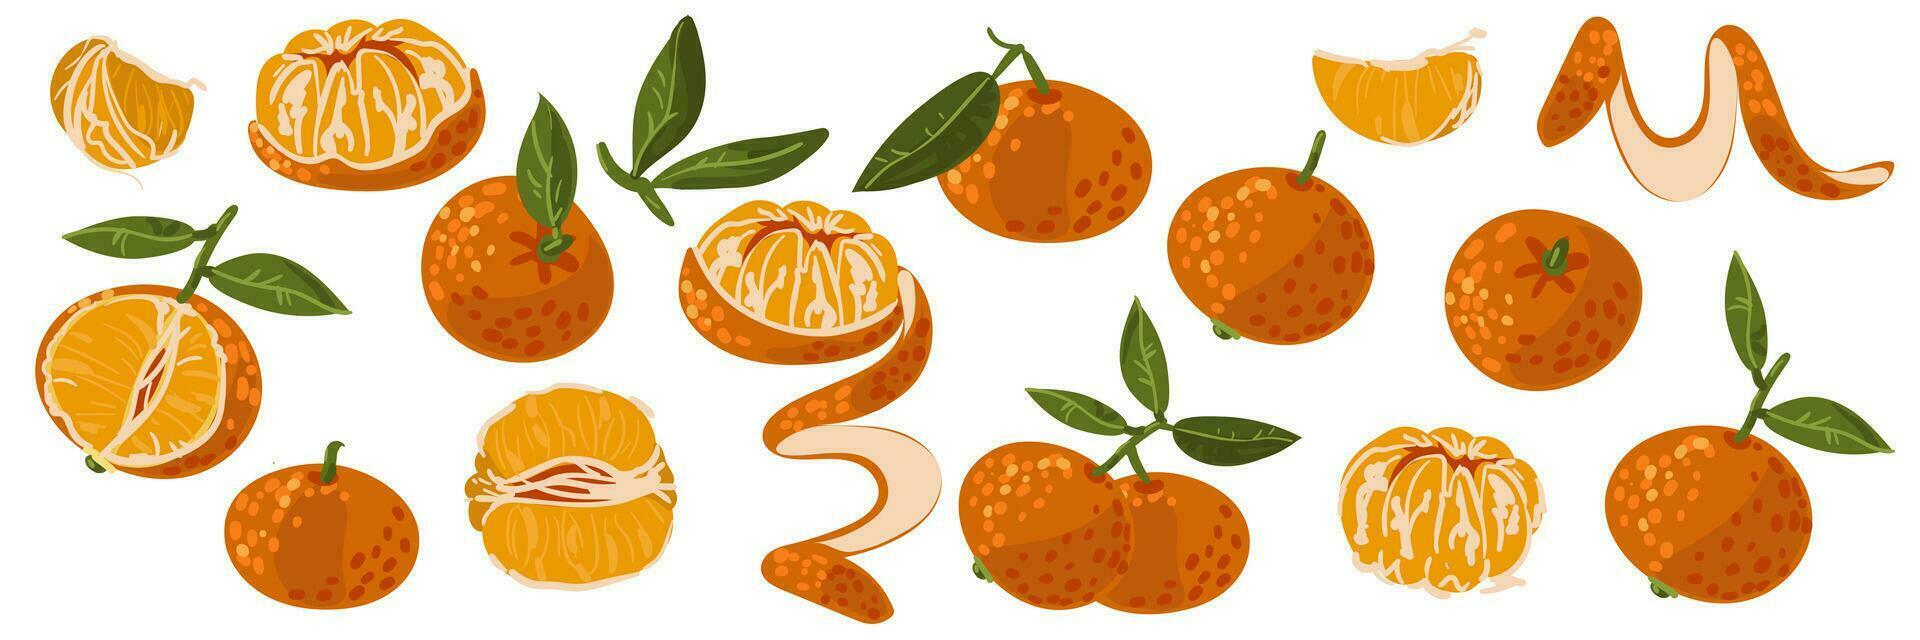 horizontaal reeks van mandarijnen in verschillend vormen. plak, geheel, Pel, voor de helft, Pel, Pel. geïsoleerd vector oranje illustraties Aan een wit achtergrond. elementen voor de sticker. winter Kerstmis fruit